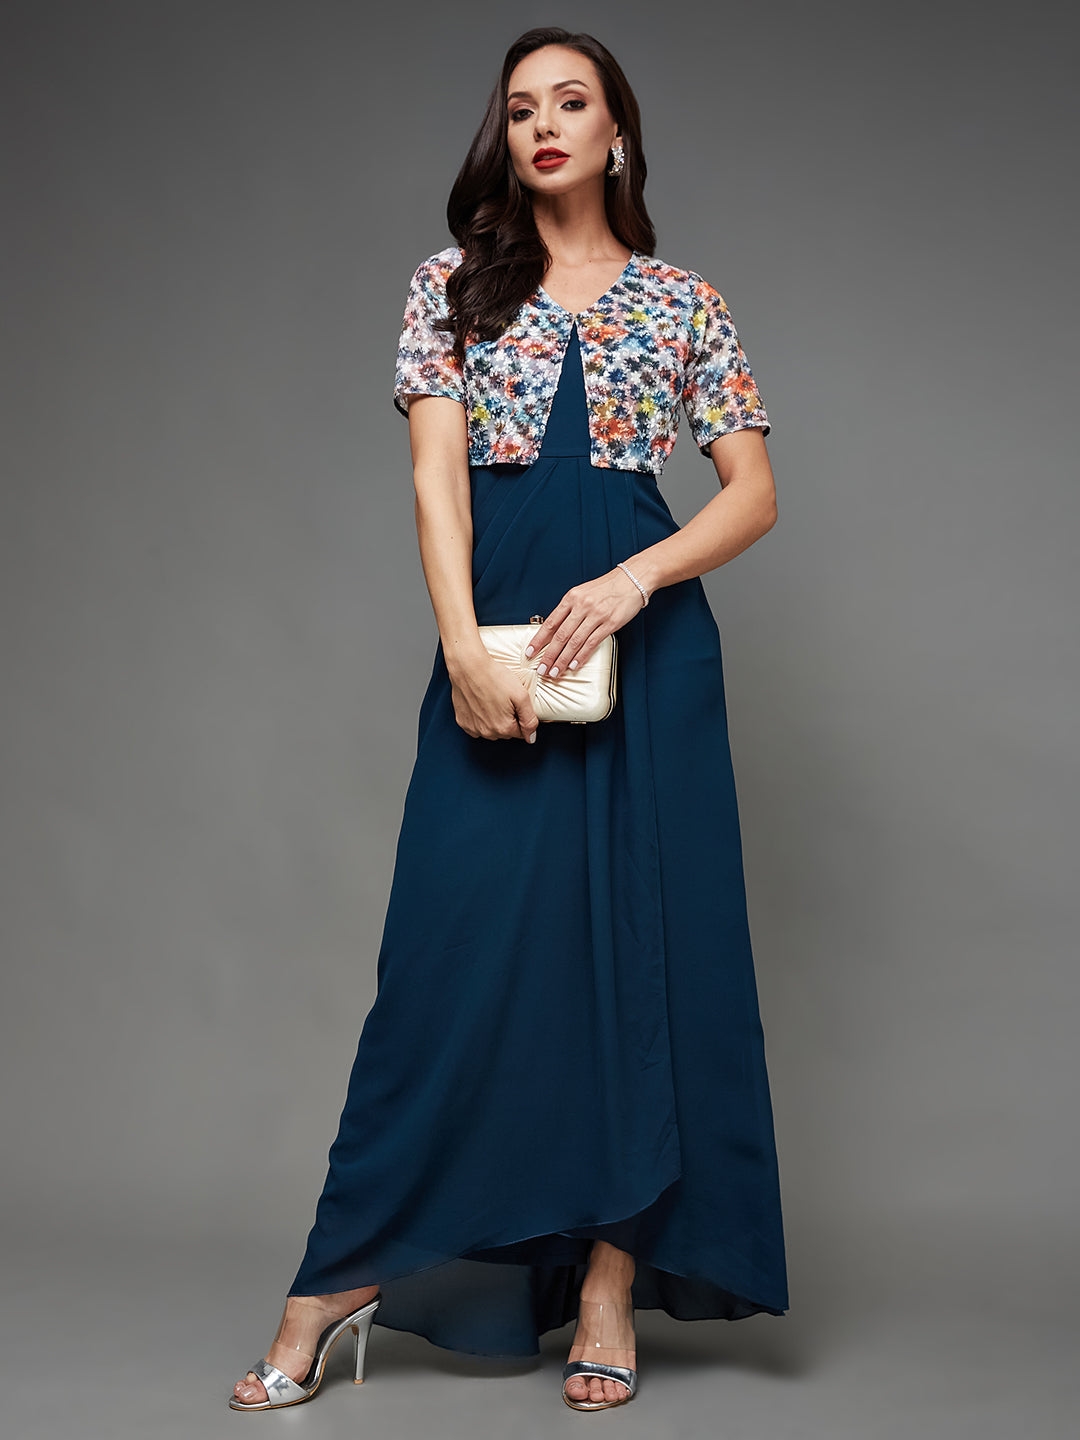 Women's Blue Georgette Casualwear Maxi Dress